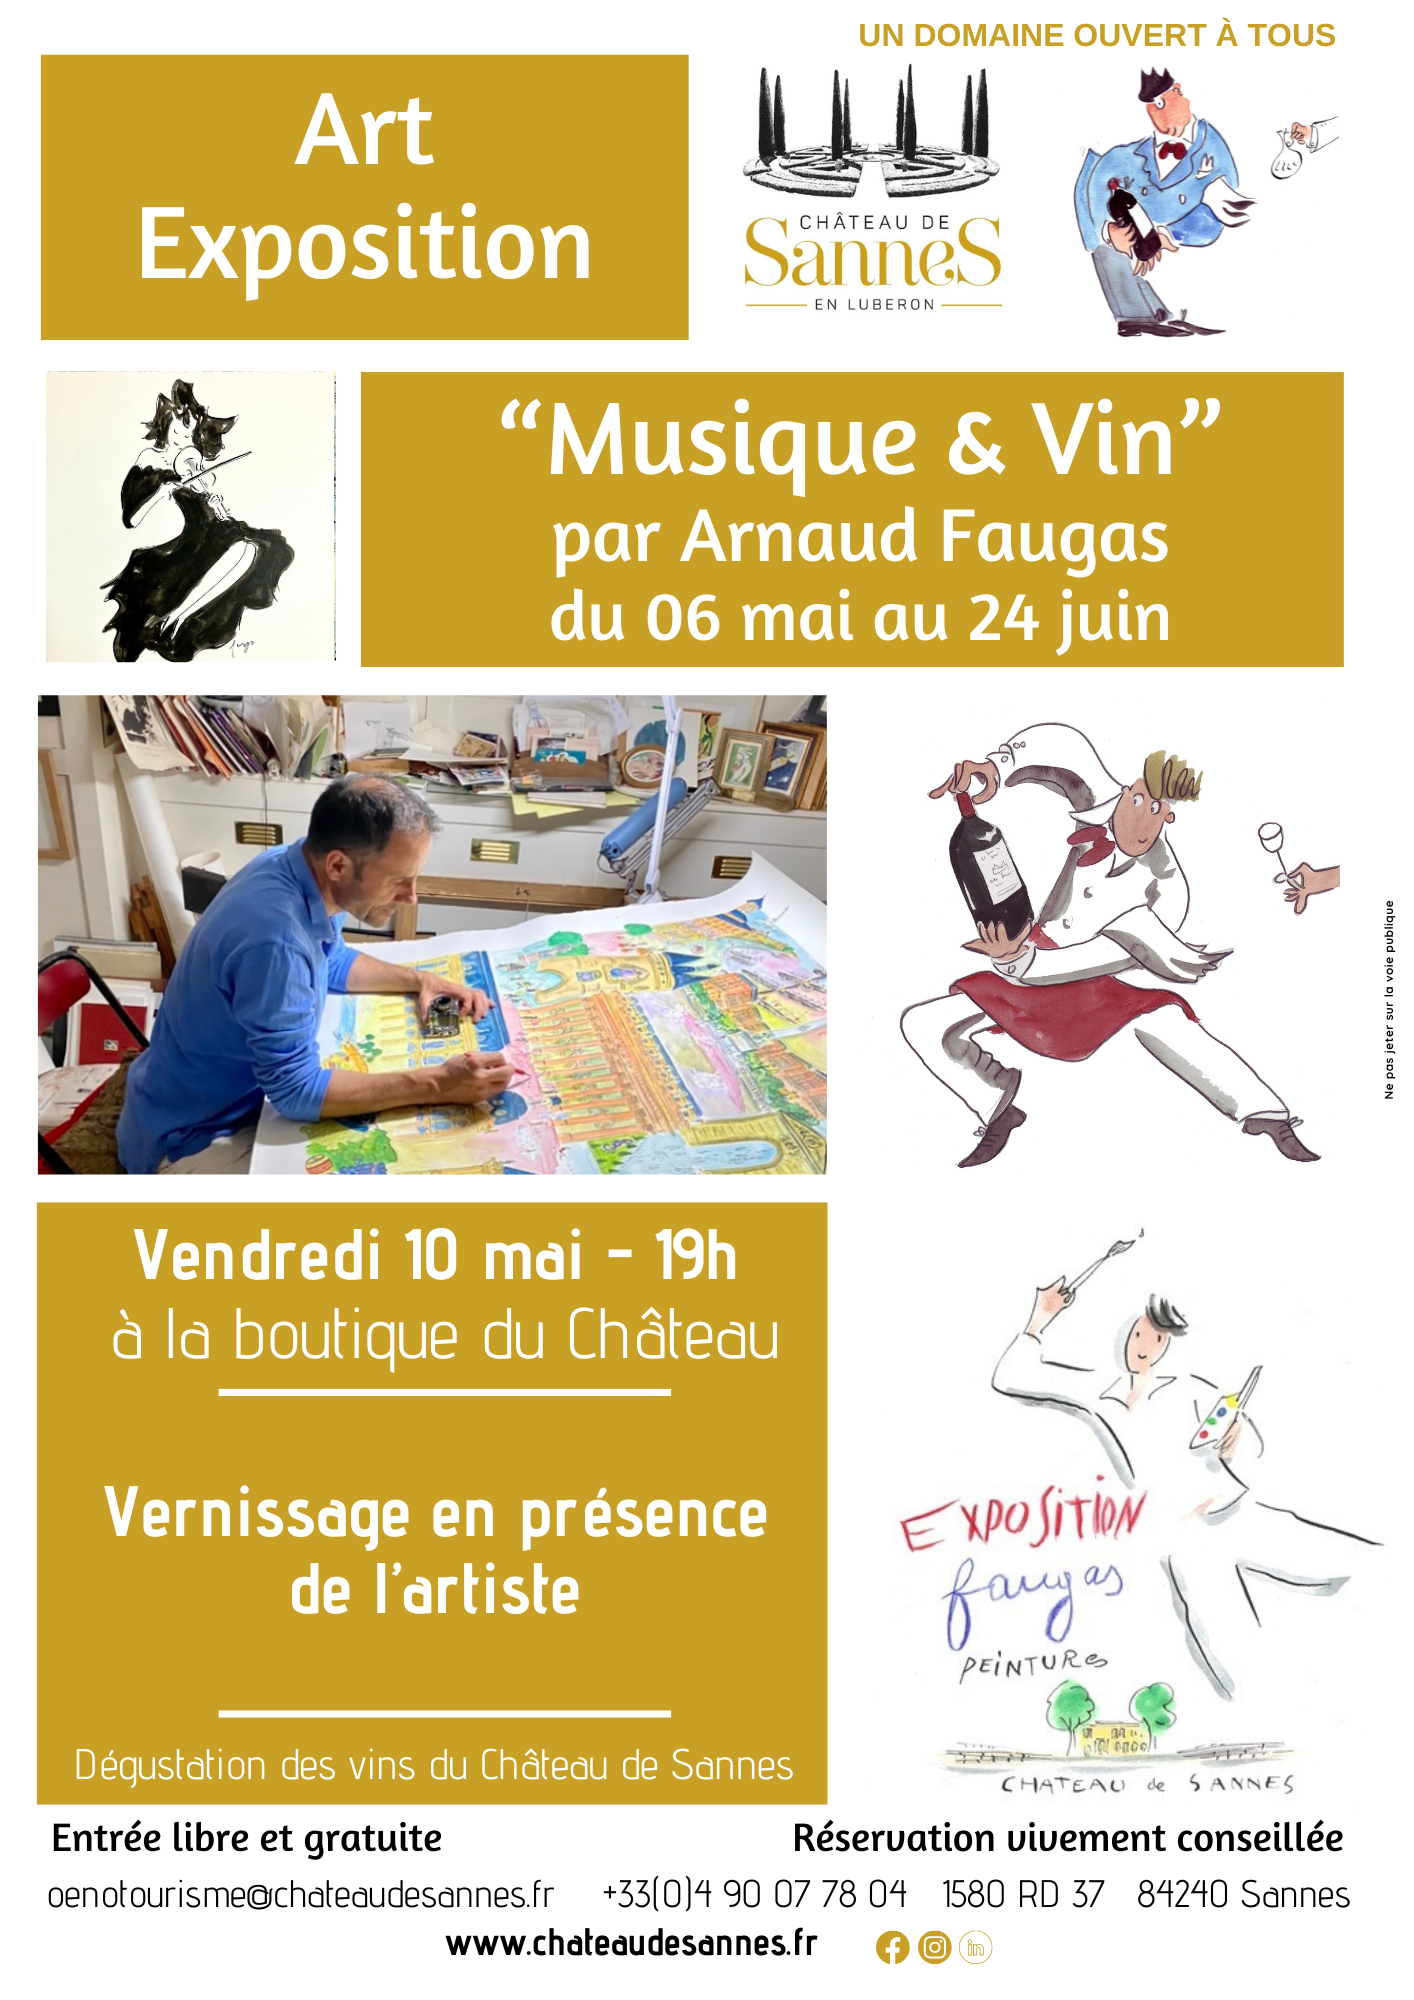 Vernissage Arnaud Faugas Aquarelle en présence de l'artiste au chateau de sannes vendredi 10 mai